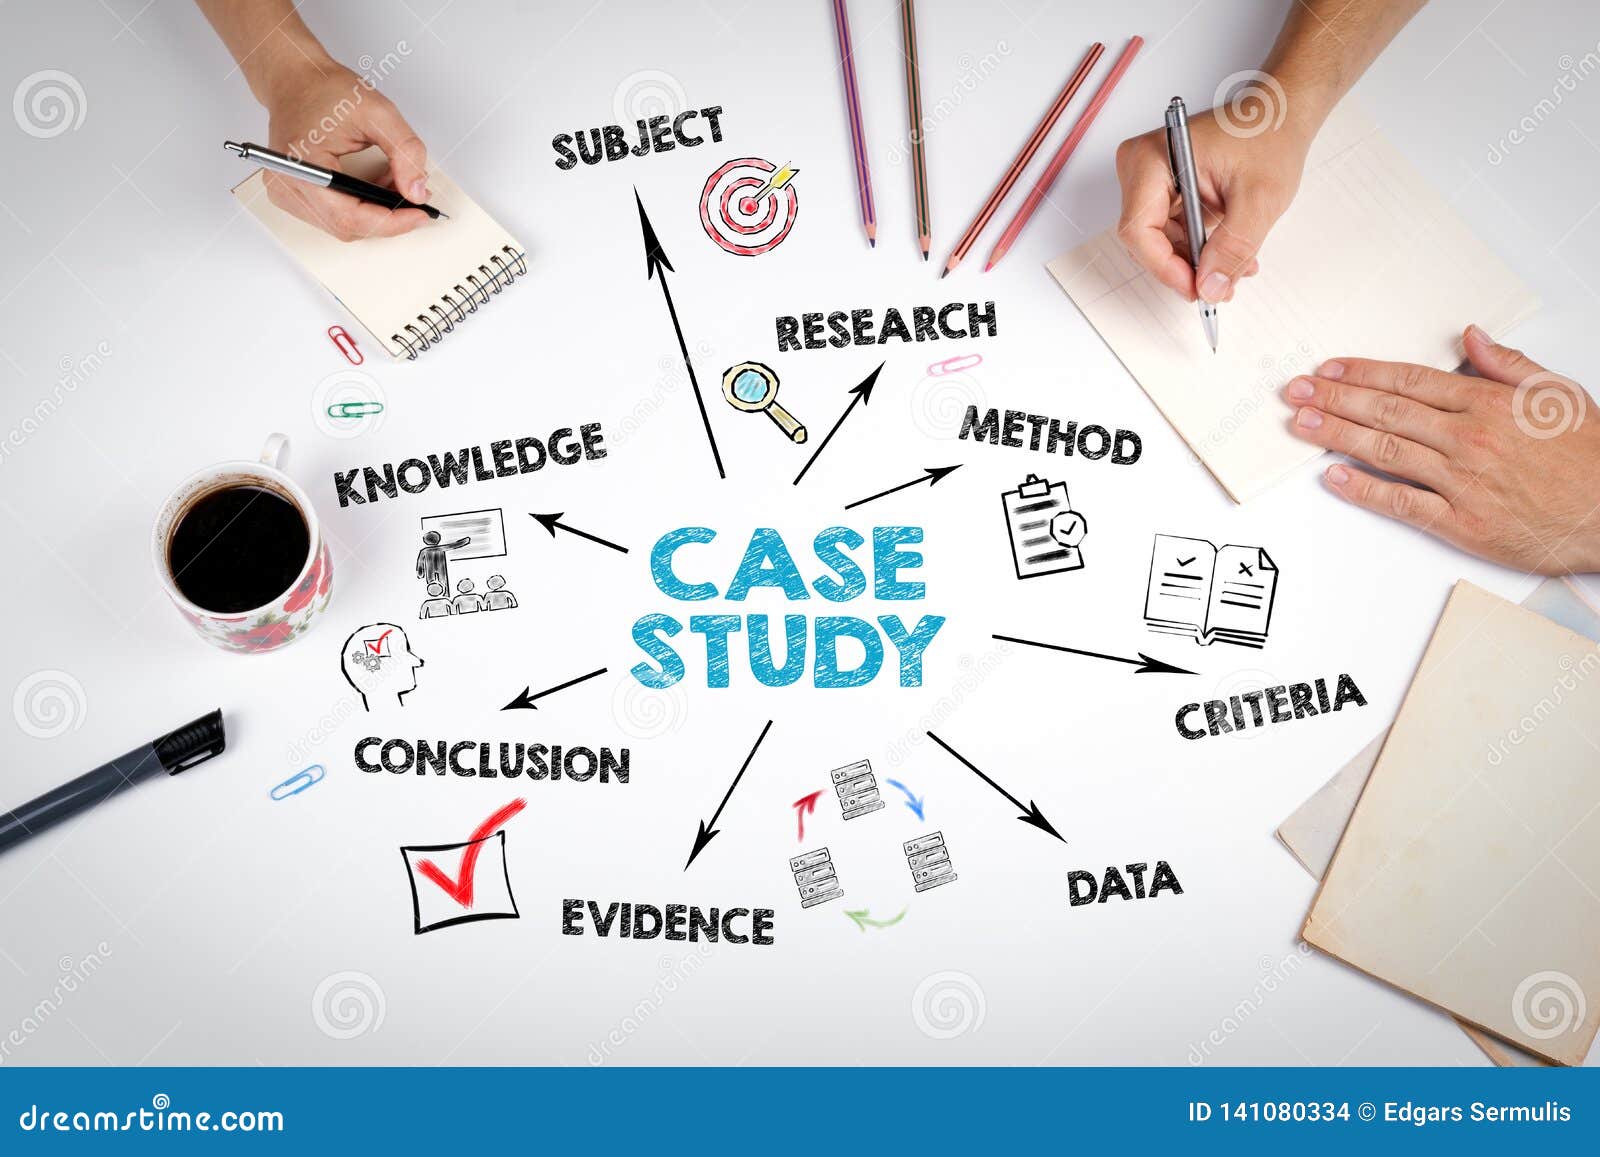 case study keywords